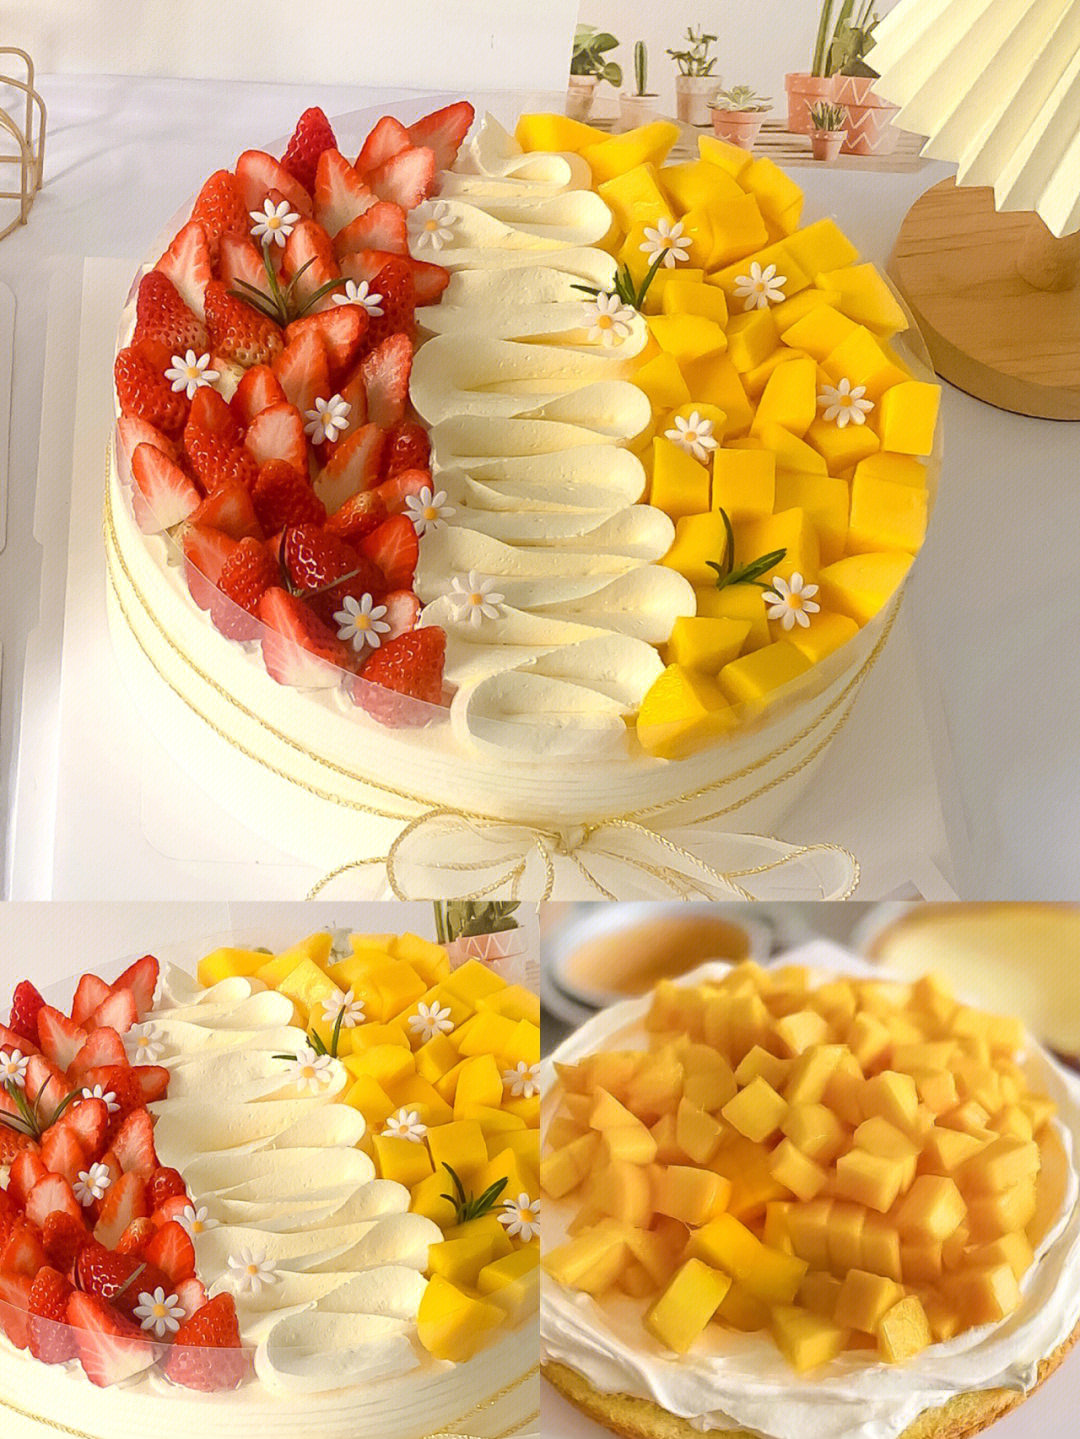 水果蛋糕12种水果摆法图片